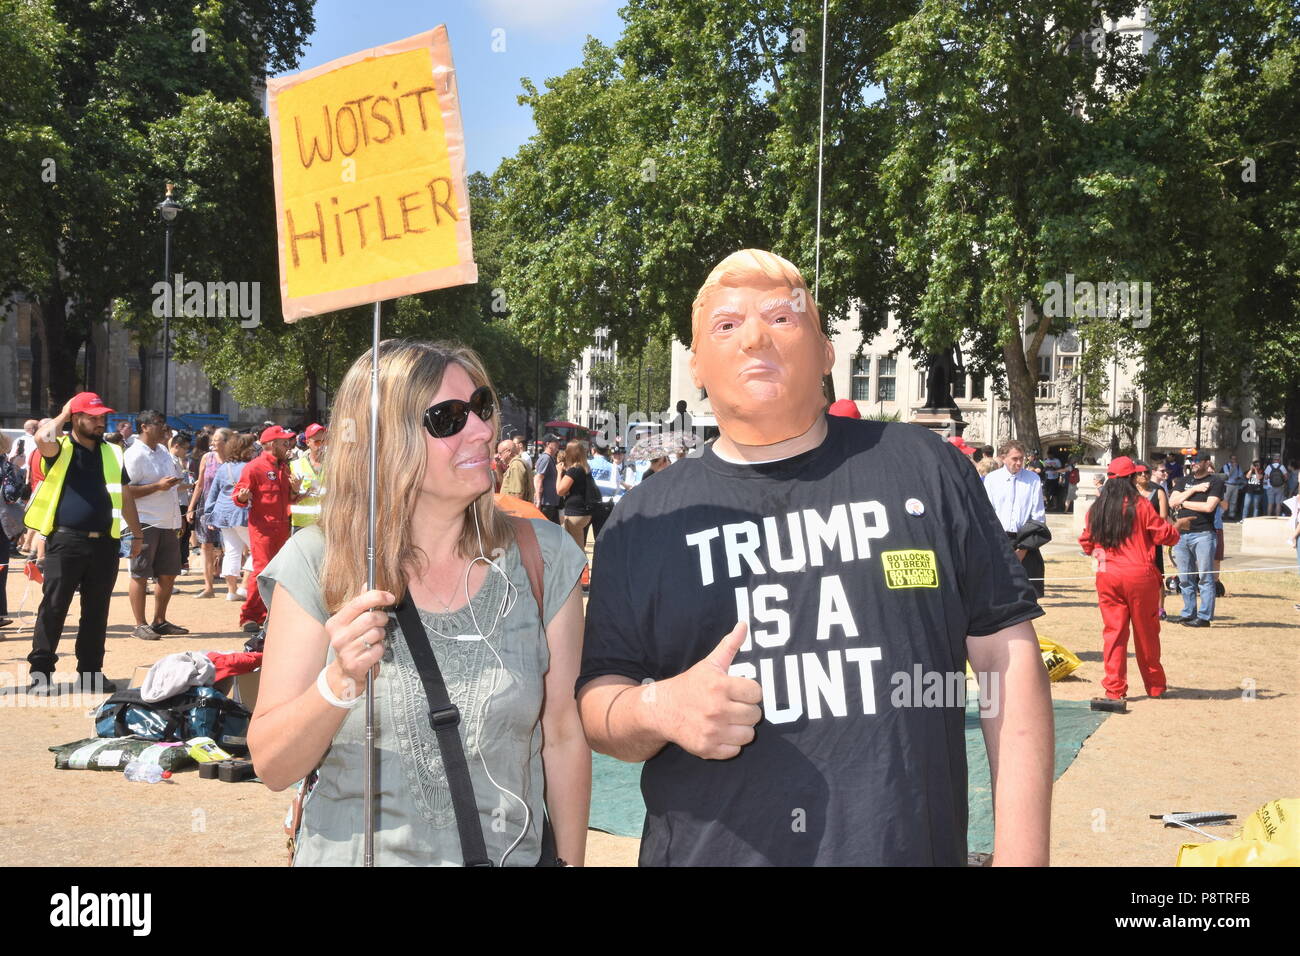 Dans l'homme masque de Donald Trump en caoutchouc.Les manifestants se sont réunis au Parlement Square, au pied de l'Trumpbaby balloon pour manifester contre la visite de Donald Trump à l'UK,Place du Parlement,London.UK 13.07.18 Banque D'Images